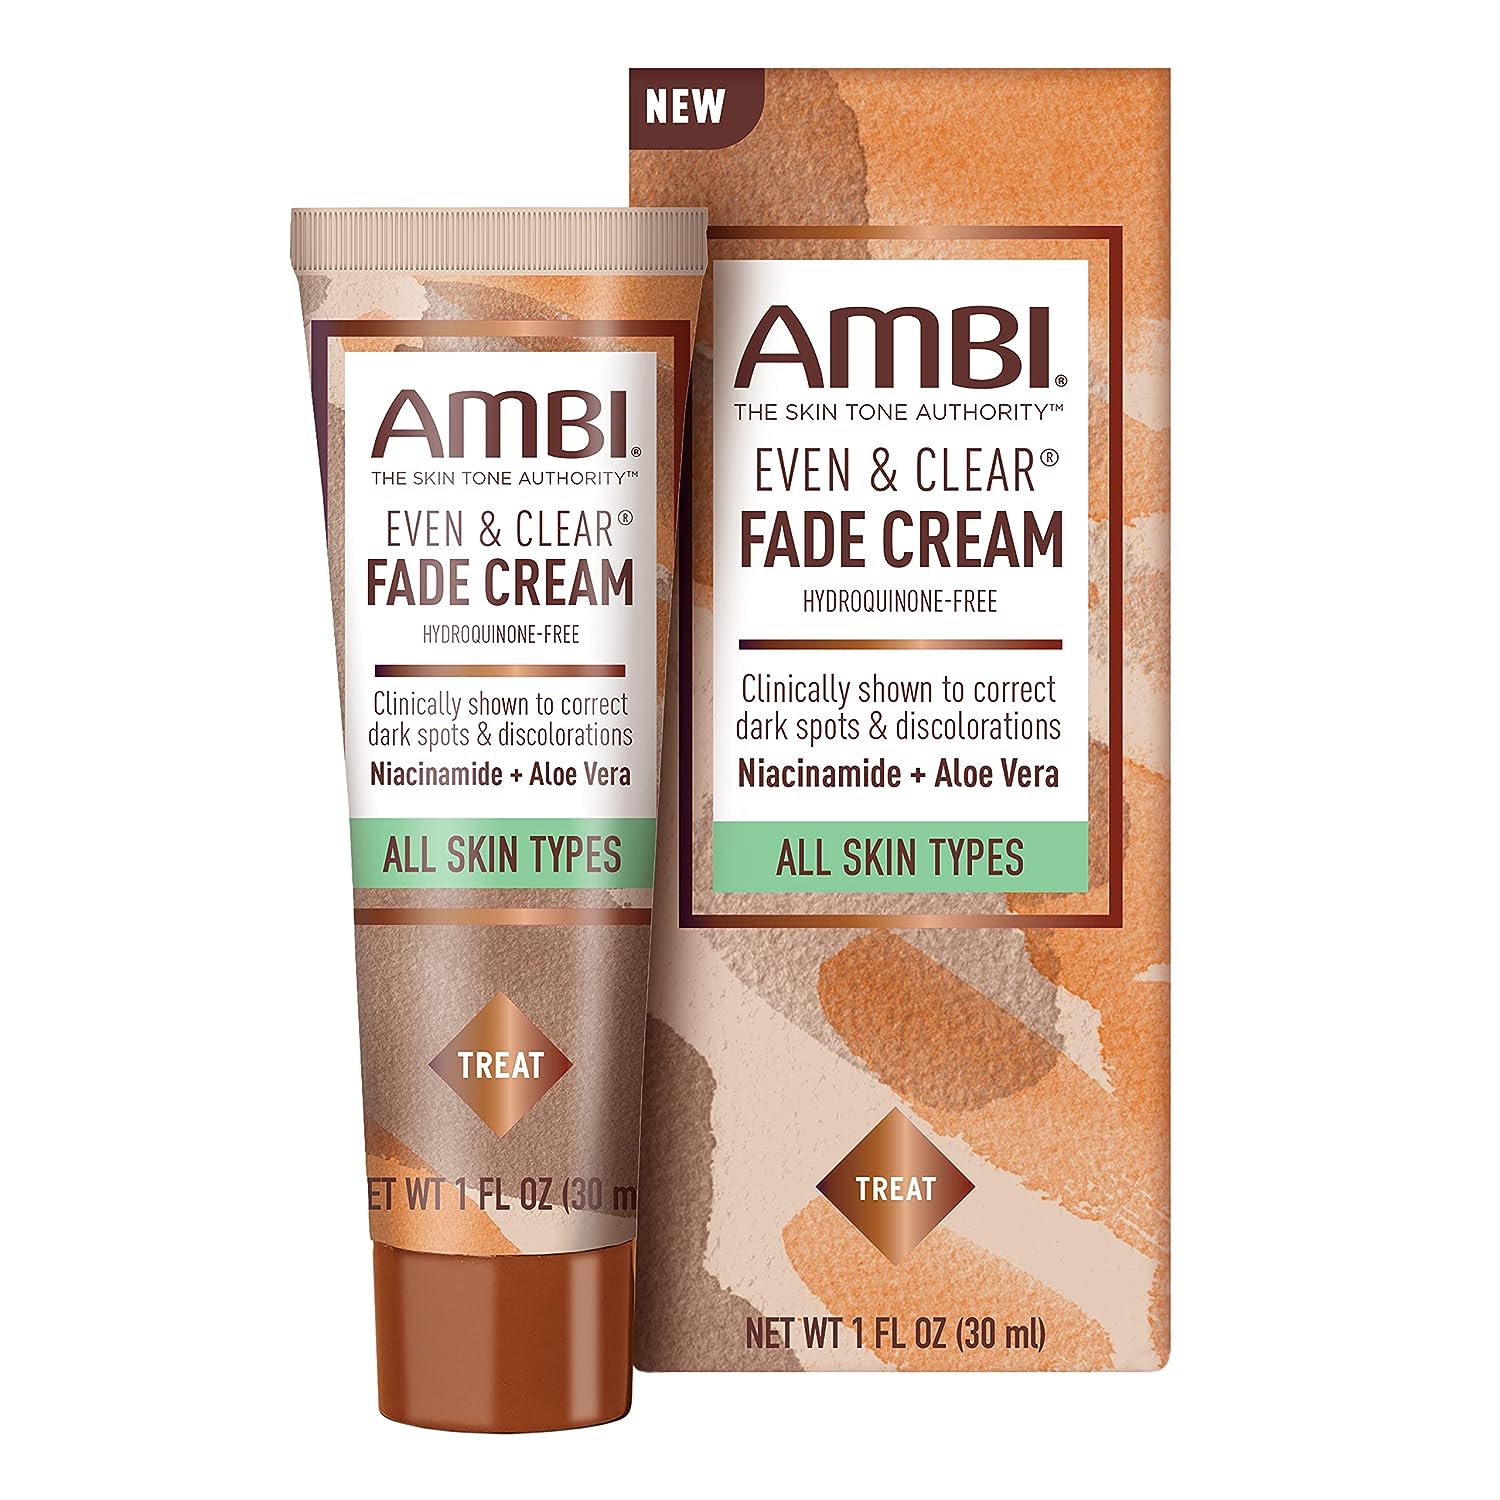 Ambi Even & Clear Fade Cream, Hydroquinone-free, Hyperpigmentation Treatment, Dark Spot Correcto